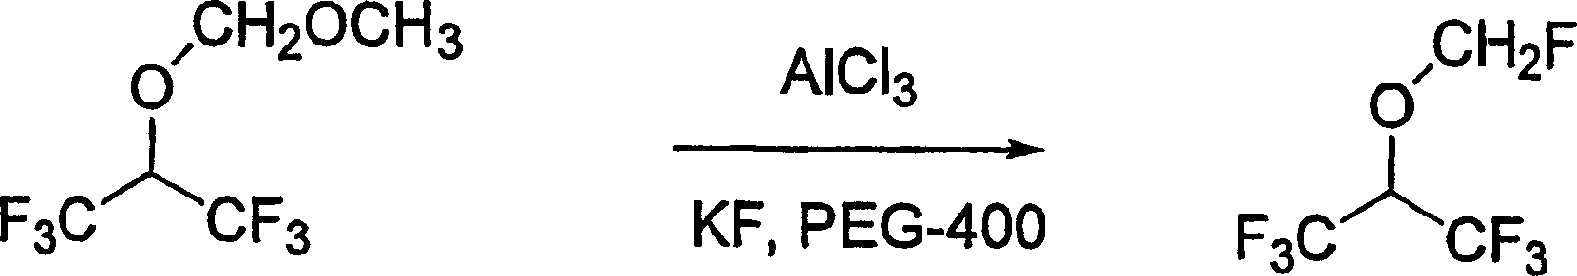 Synthetic method for fluoromethylation of alcohols